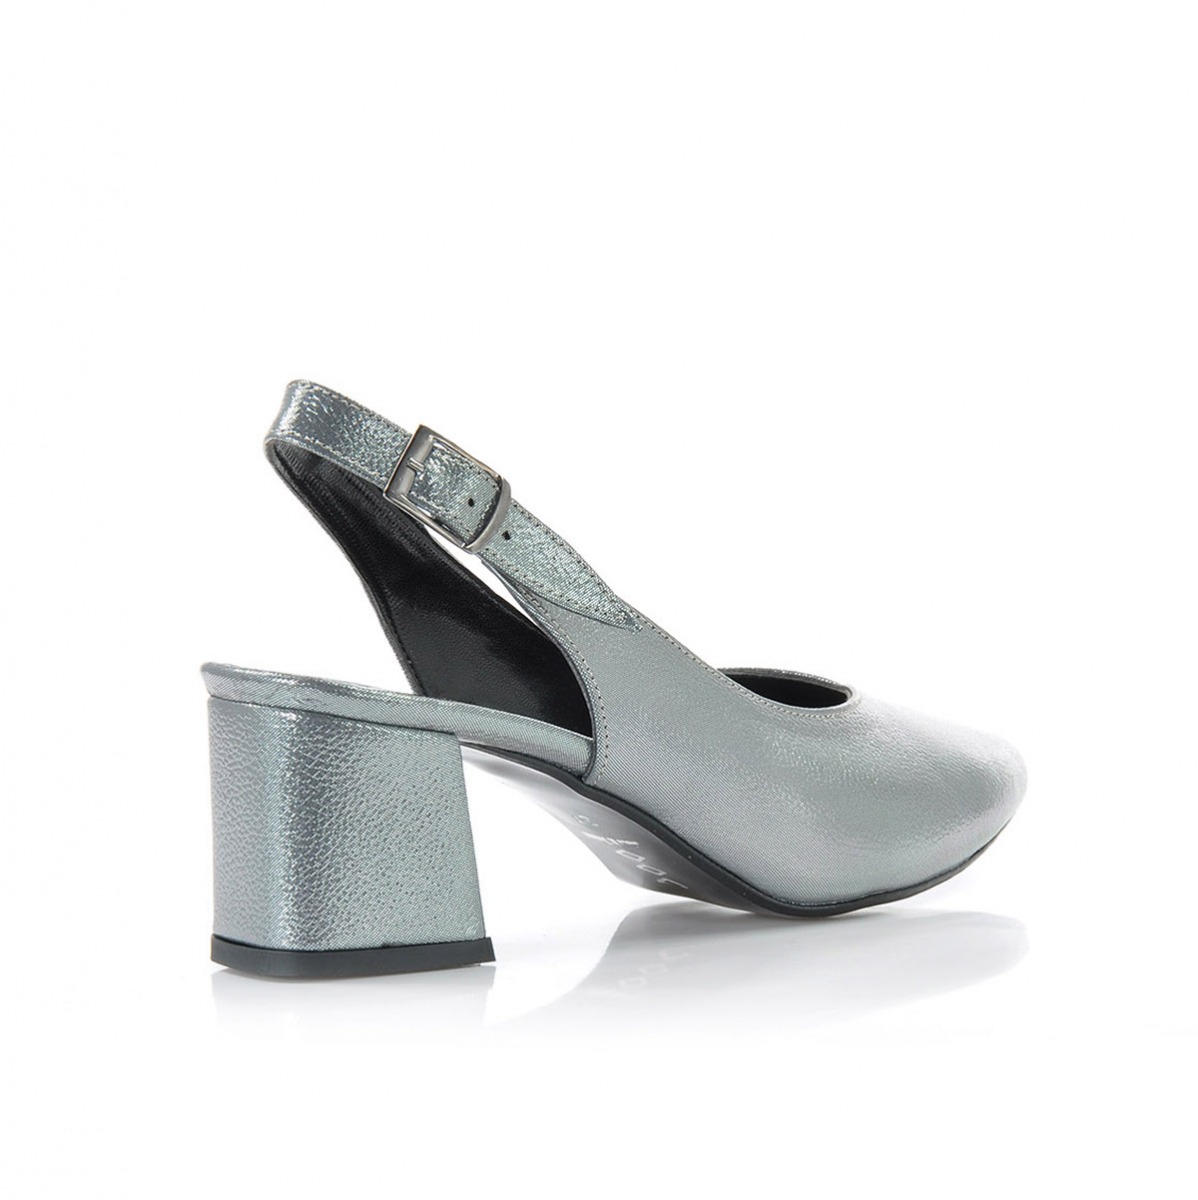 Flo Kadın  Gümüş Klasik Topuklu Ayakkabı VZN-086Y. 4